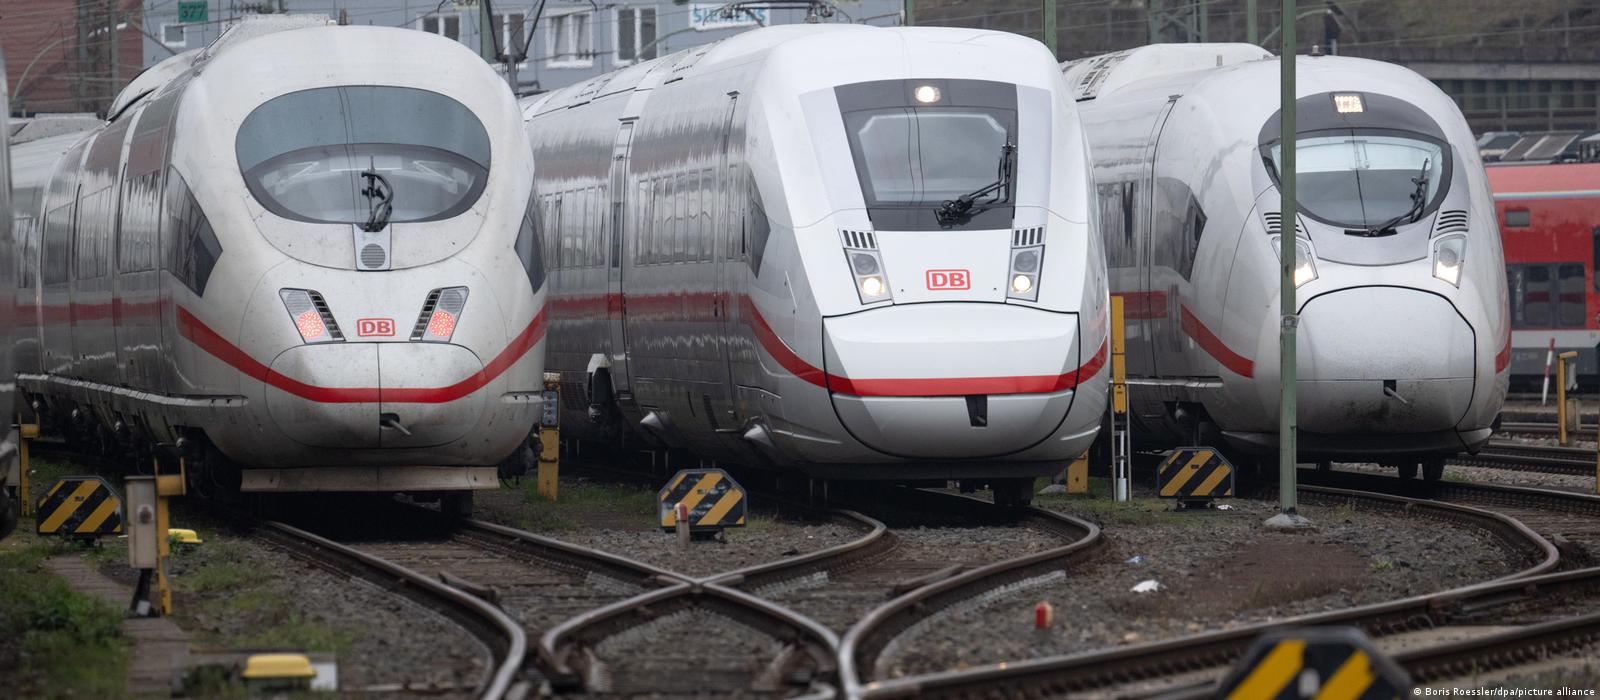 ألمانيا: إضراب السكك الحديدية ليوم واحد يكلف إلى 100 مليون يورو